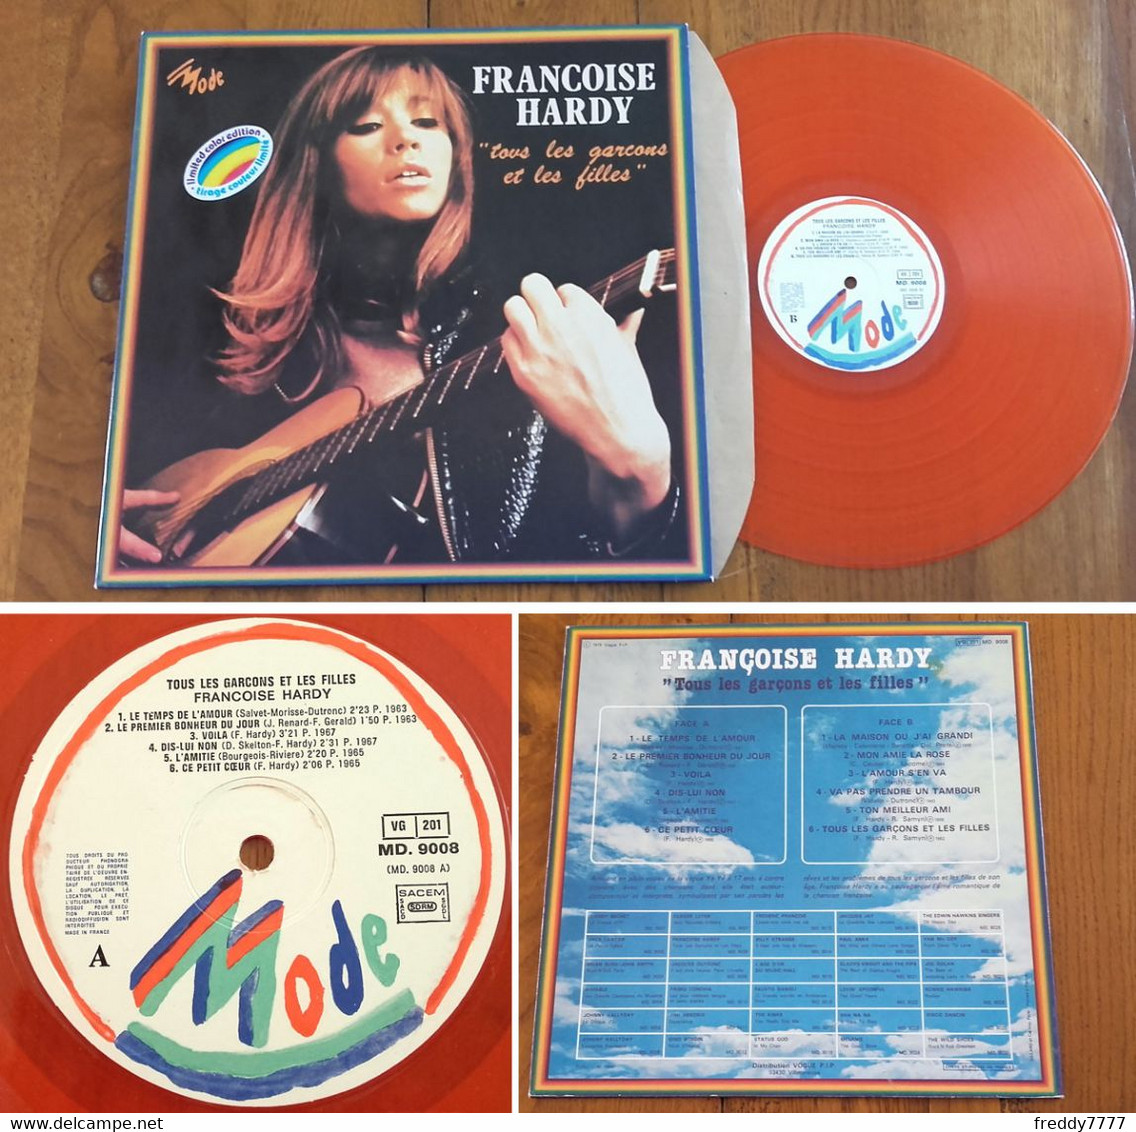 RARE French LP 33t RPM (12") FRANCOISE HARDY (tirage Limité, Pressage Orange, 1979) - Verzameluitgaven